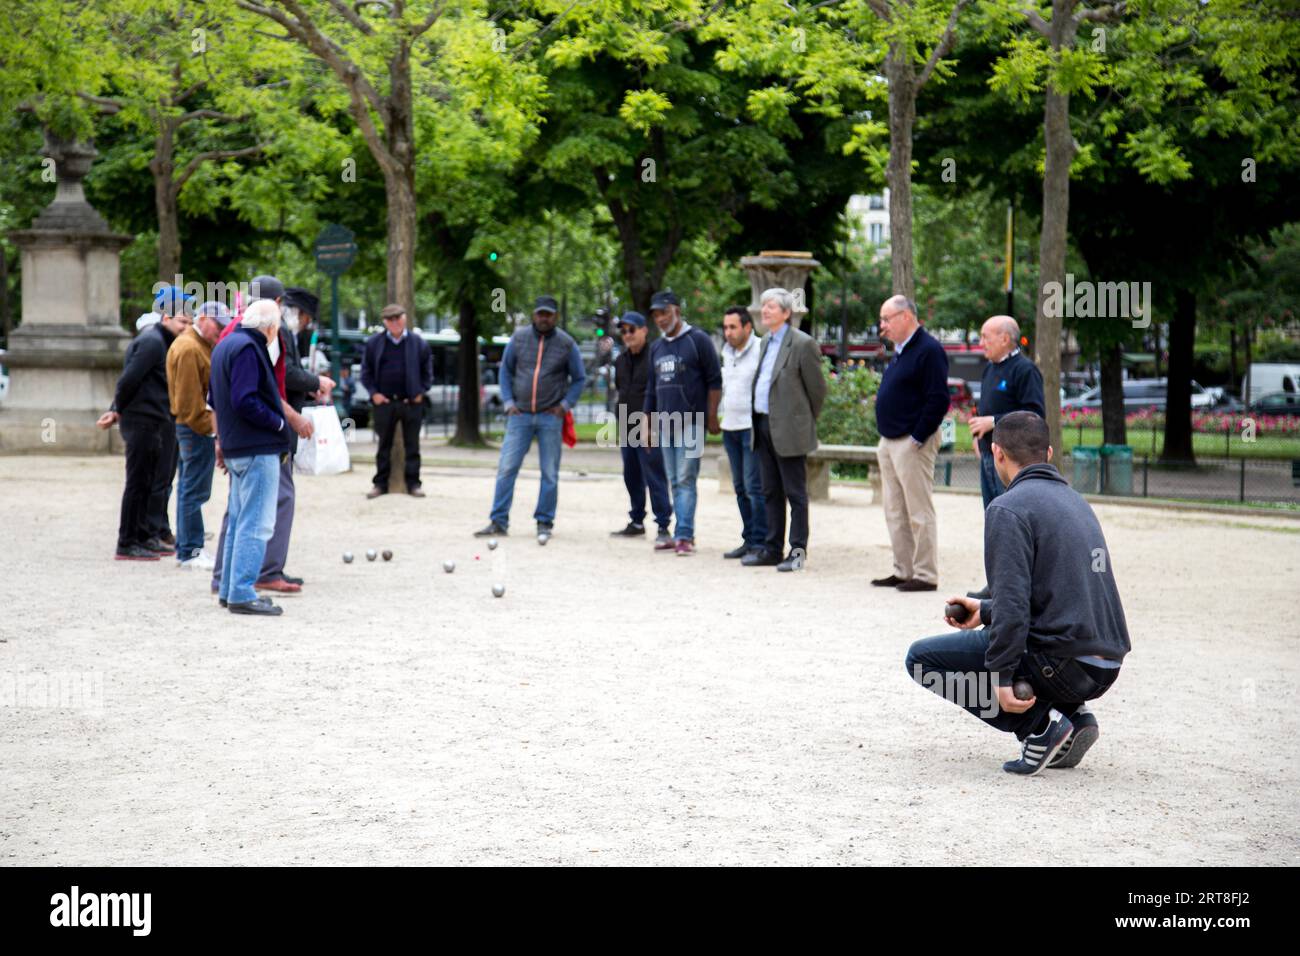 Paris, France, 11 mai 2017 : groupe d'hommes jouant à la pétanque dans un parc public Banque D'Images